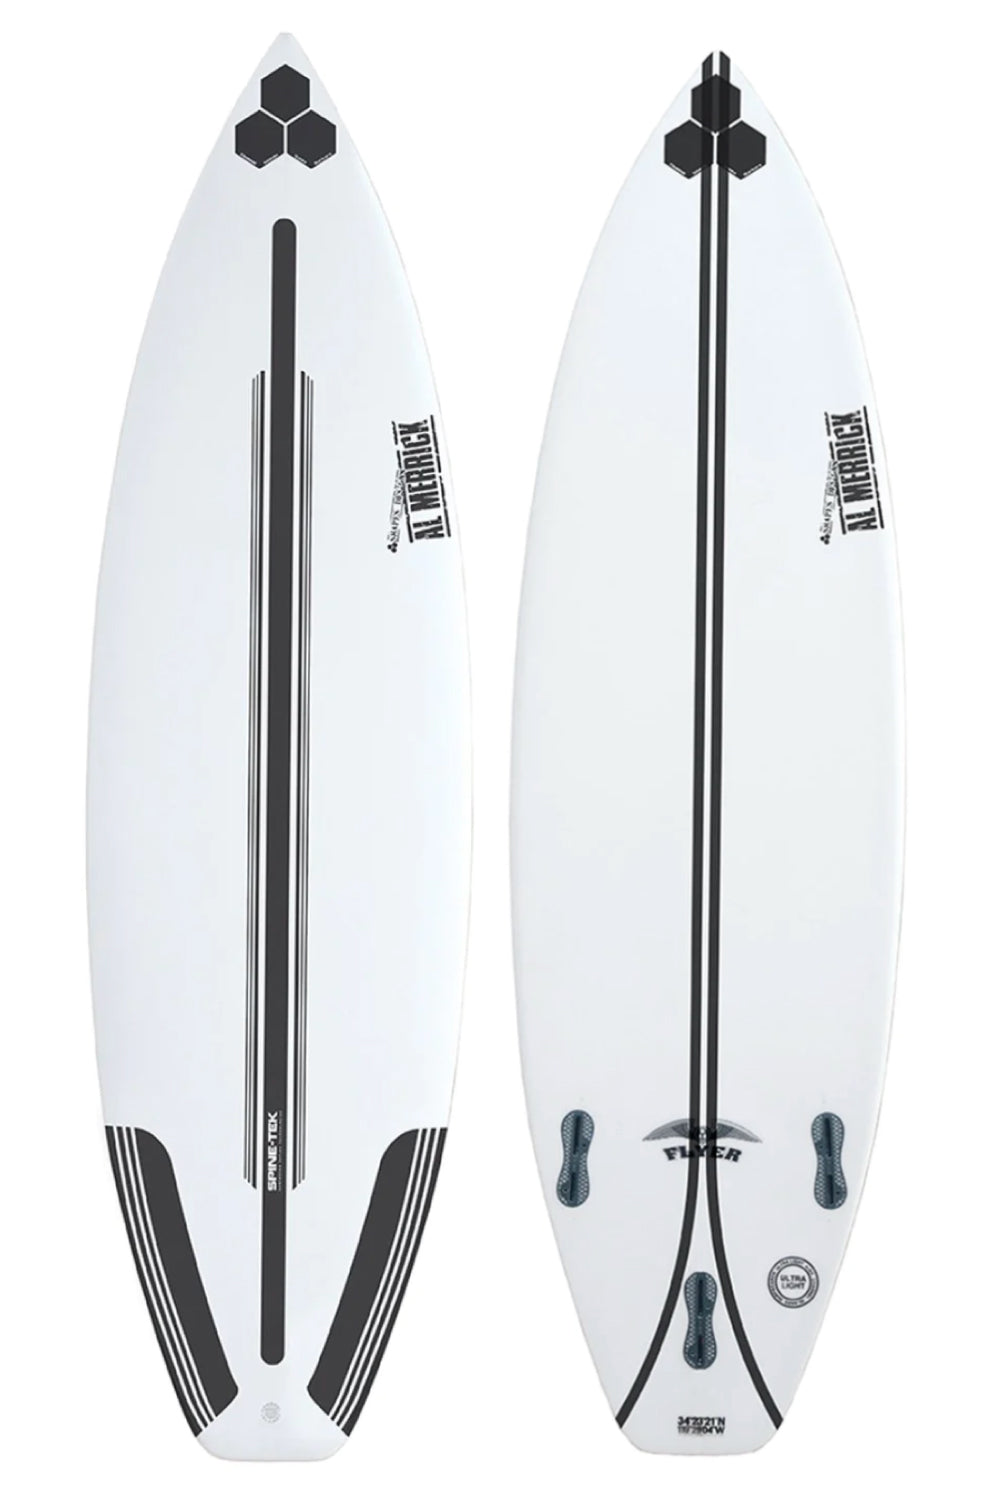 Channel Islands OG Flyer Spine-Tek Surfboard